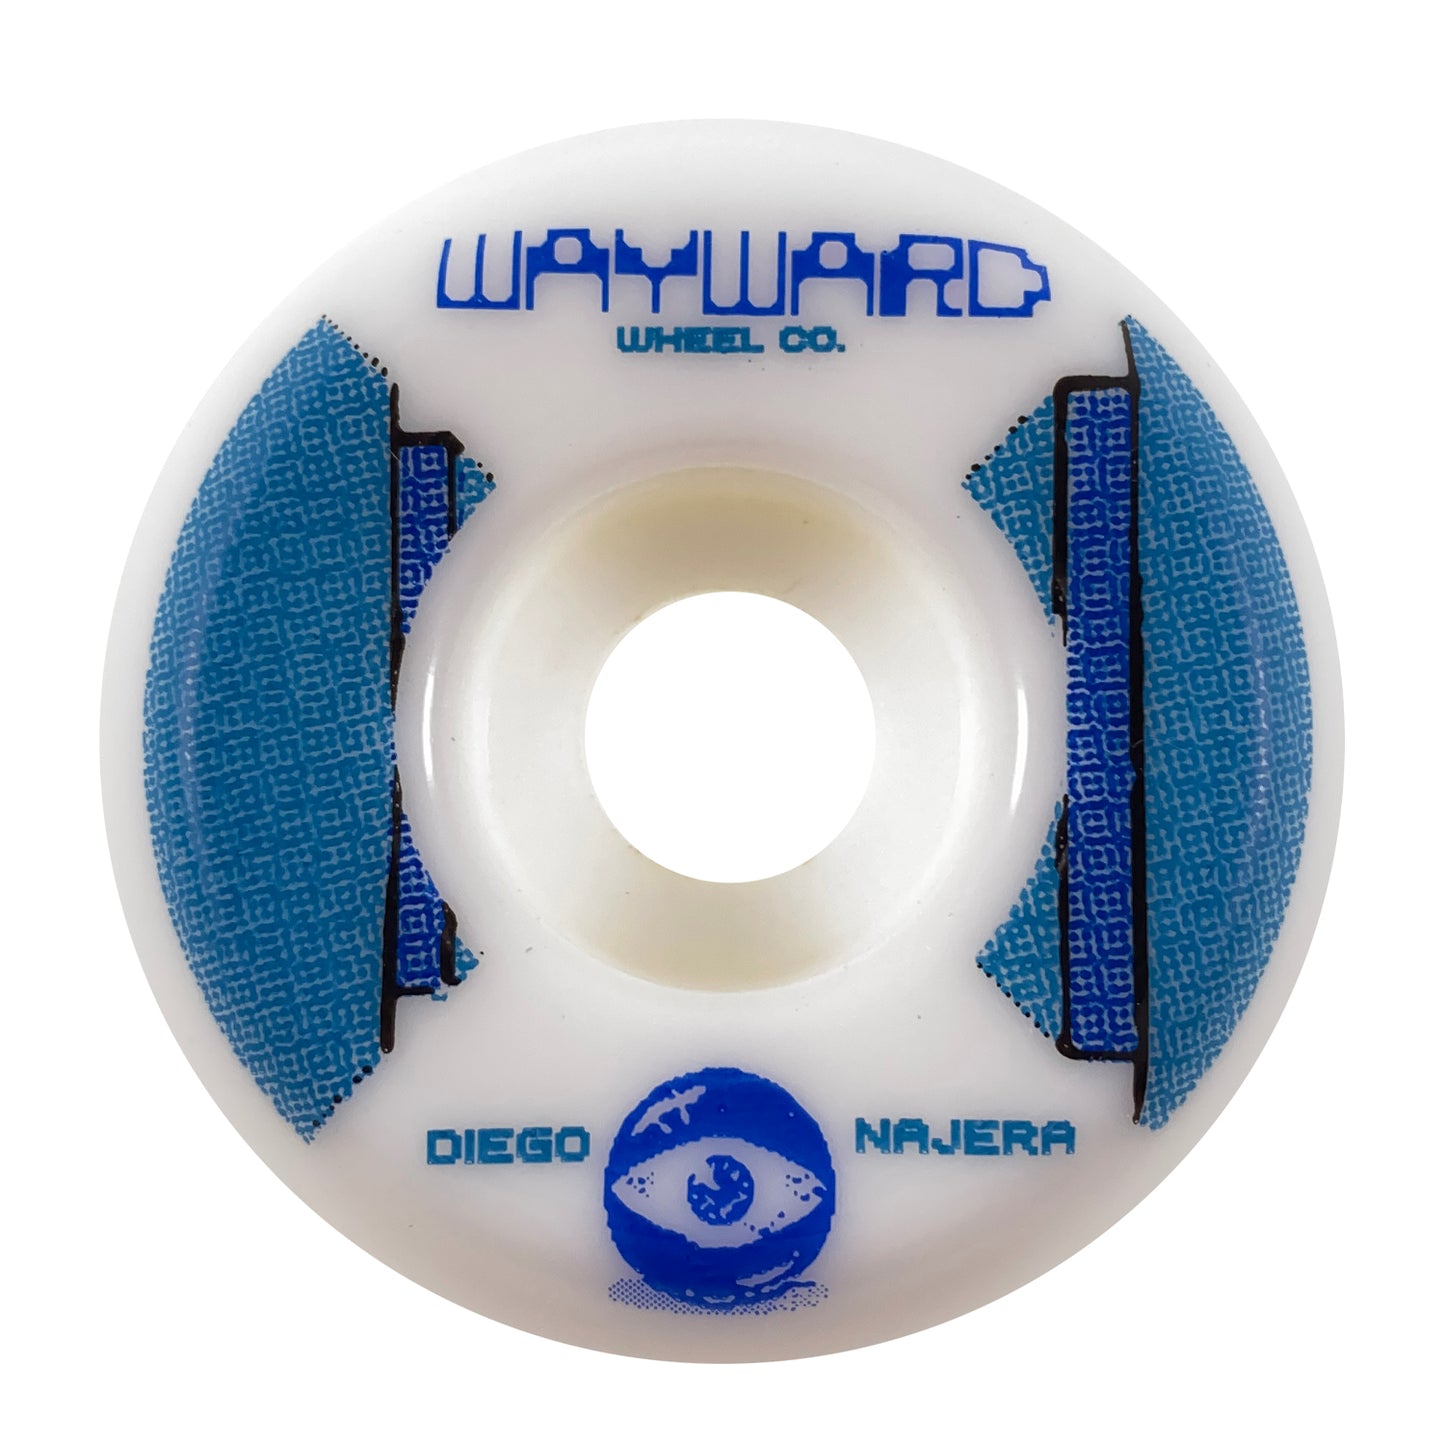 Wayward Wheels - 52mm - Funnel Pro Wheel - Diego Najera - Prime Delux Store